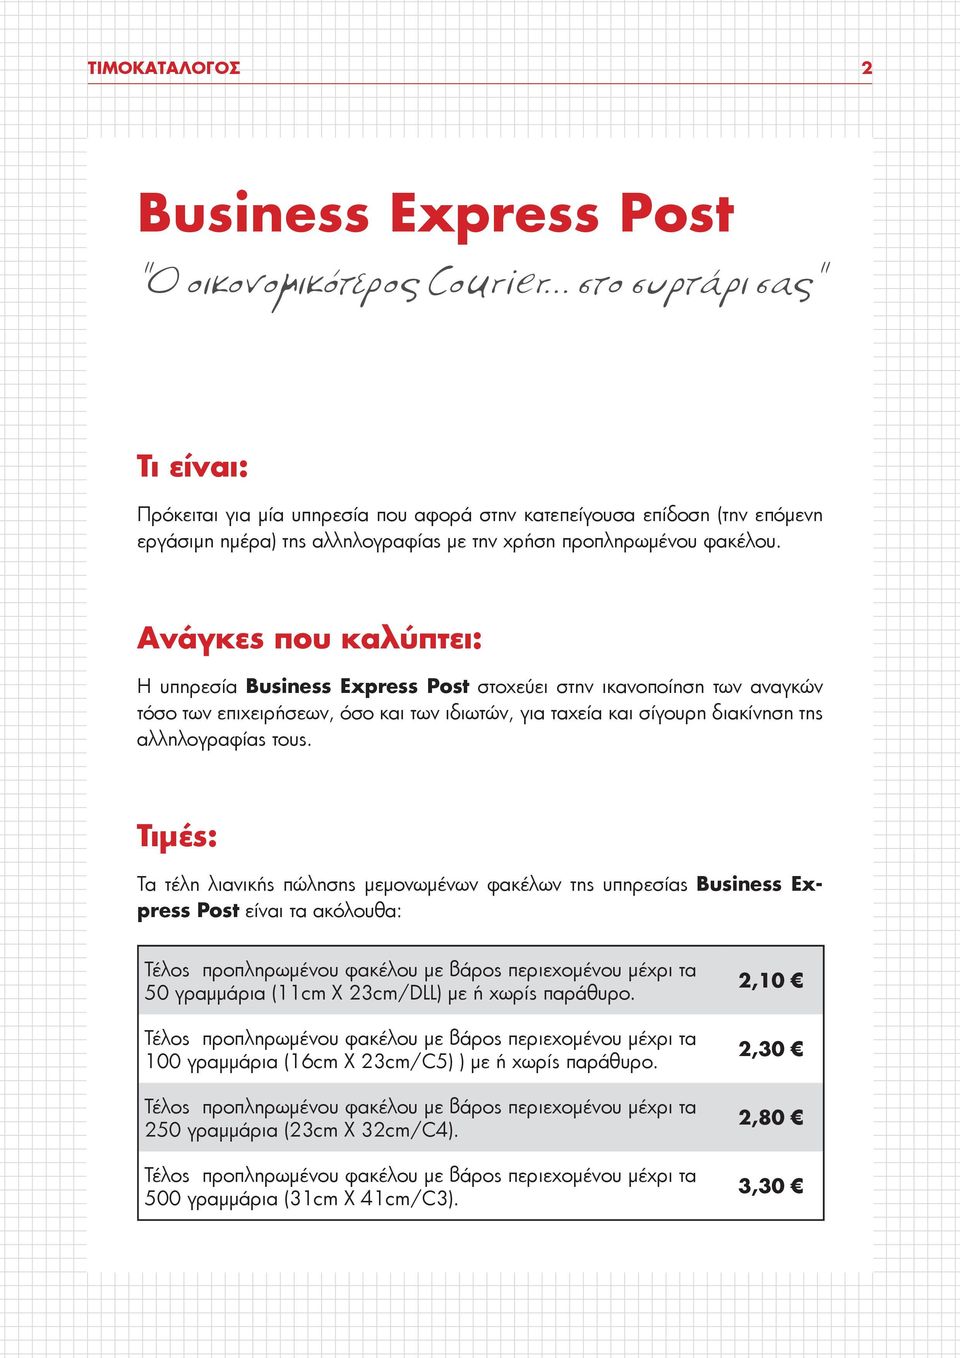 Ανάγκες που καλύπτει: Η υπηρεσία Business Express Post στοχεύει στην ικανοποίηση των αναγκών τόσο των επιχειρήσεων, όσο και των ιδιωτών, για ταχεία και σίγουρη διακίνηση της